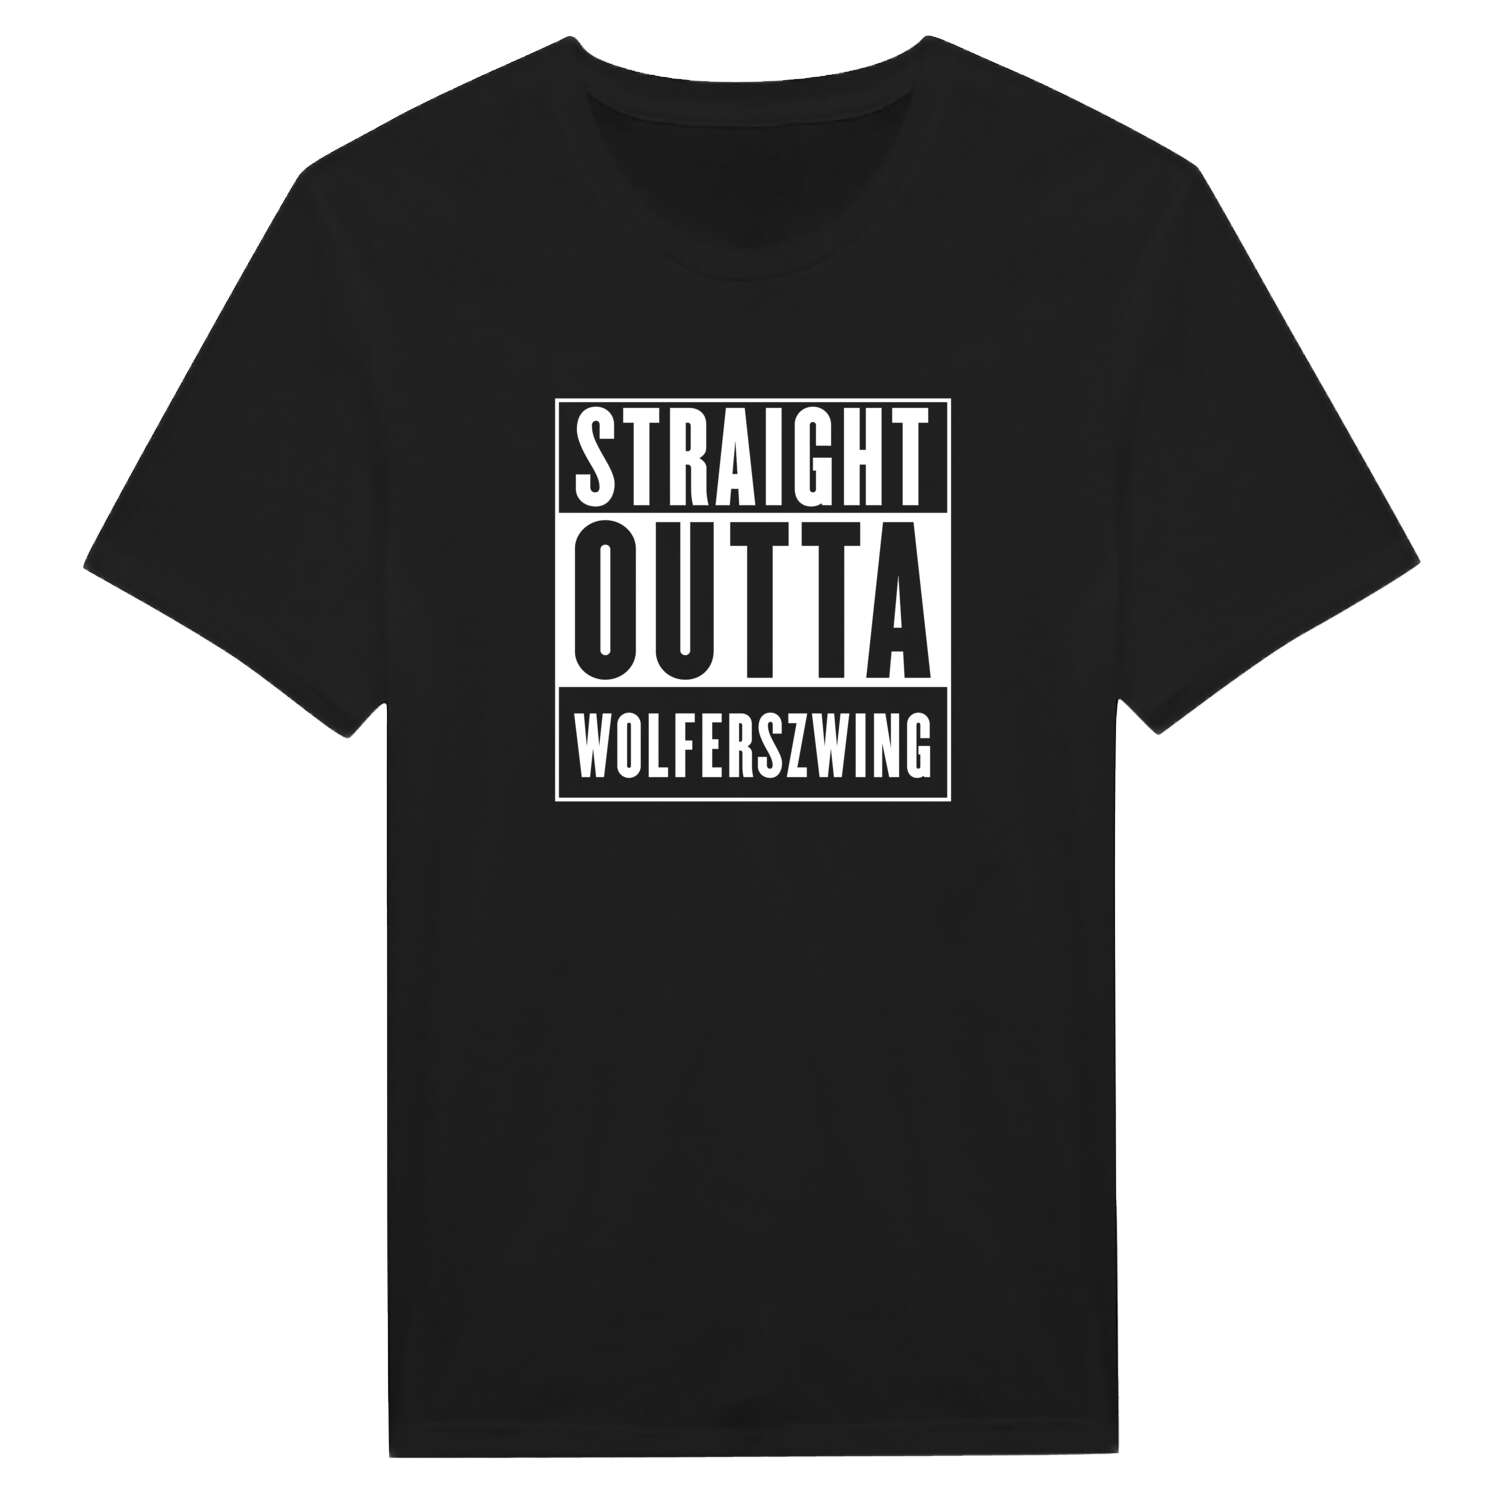 Wolferszwing T-Shirt »Straight Outta«